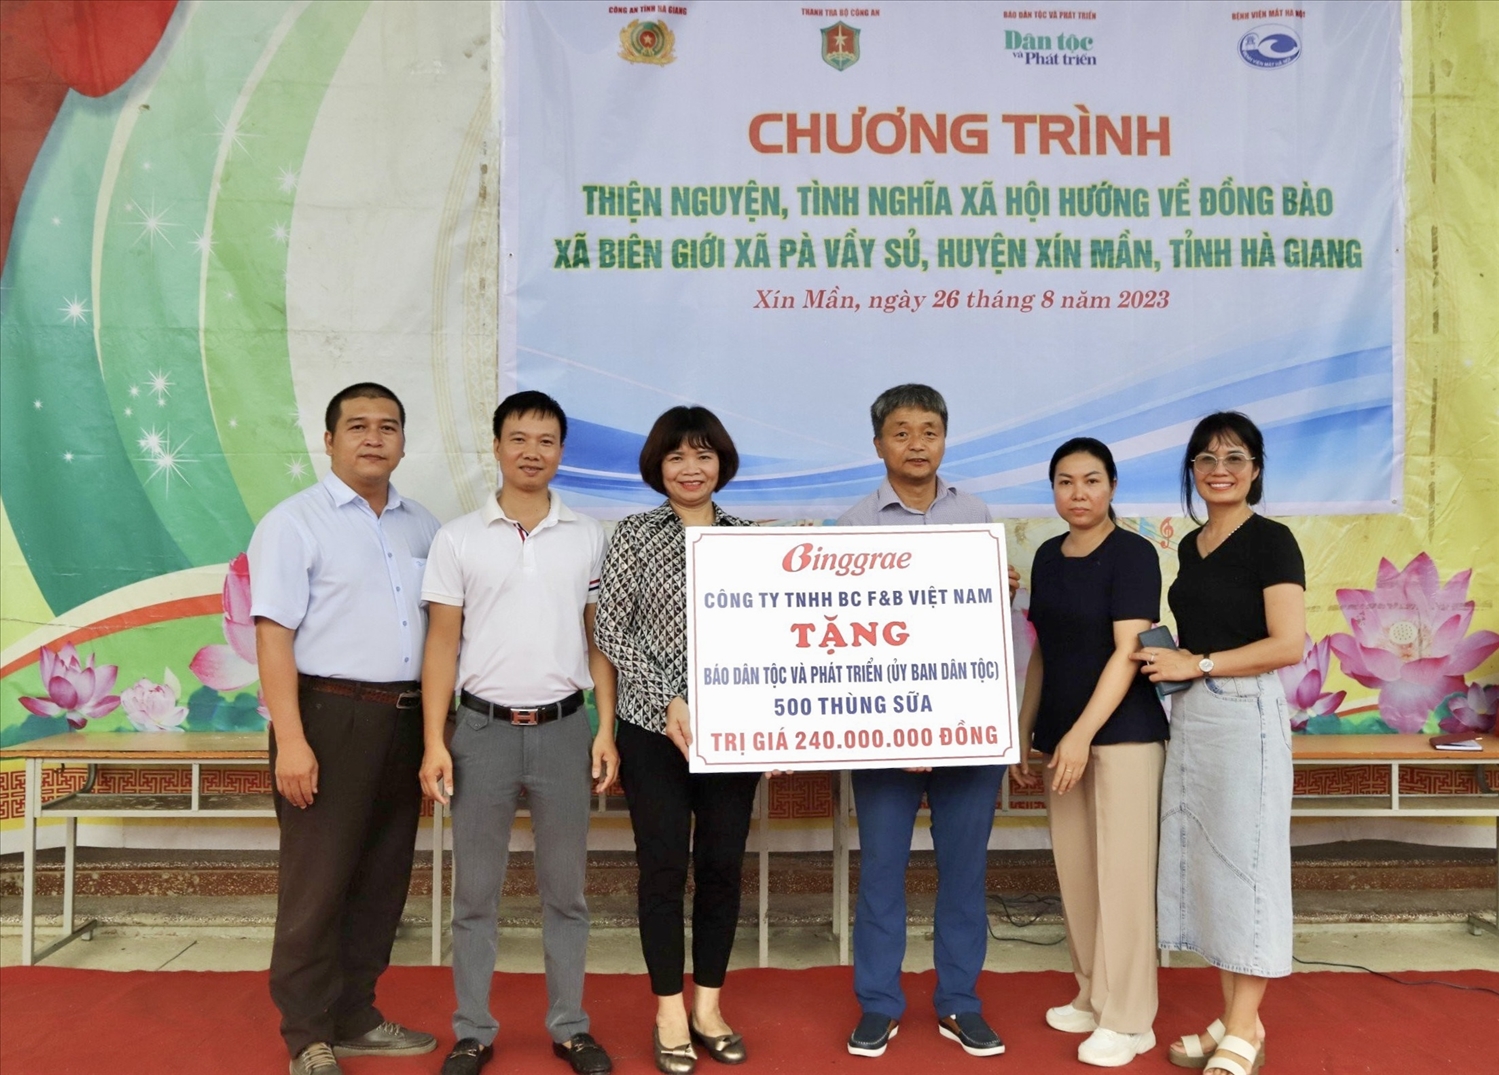 Báo Dân tộc và Phát triển cùng Công ty TNHH BC F&B Việt Nam đã trao gần 500 thùng sữ với tổng giá trị 240 triệu đồng cho các em học sinh thuộc các trường học trên địa bàn xã